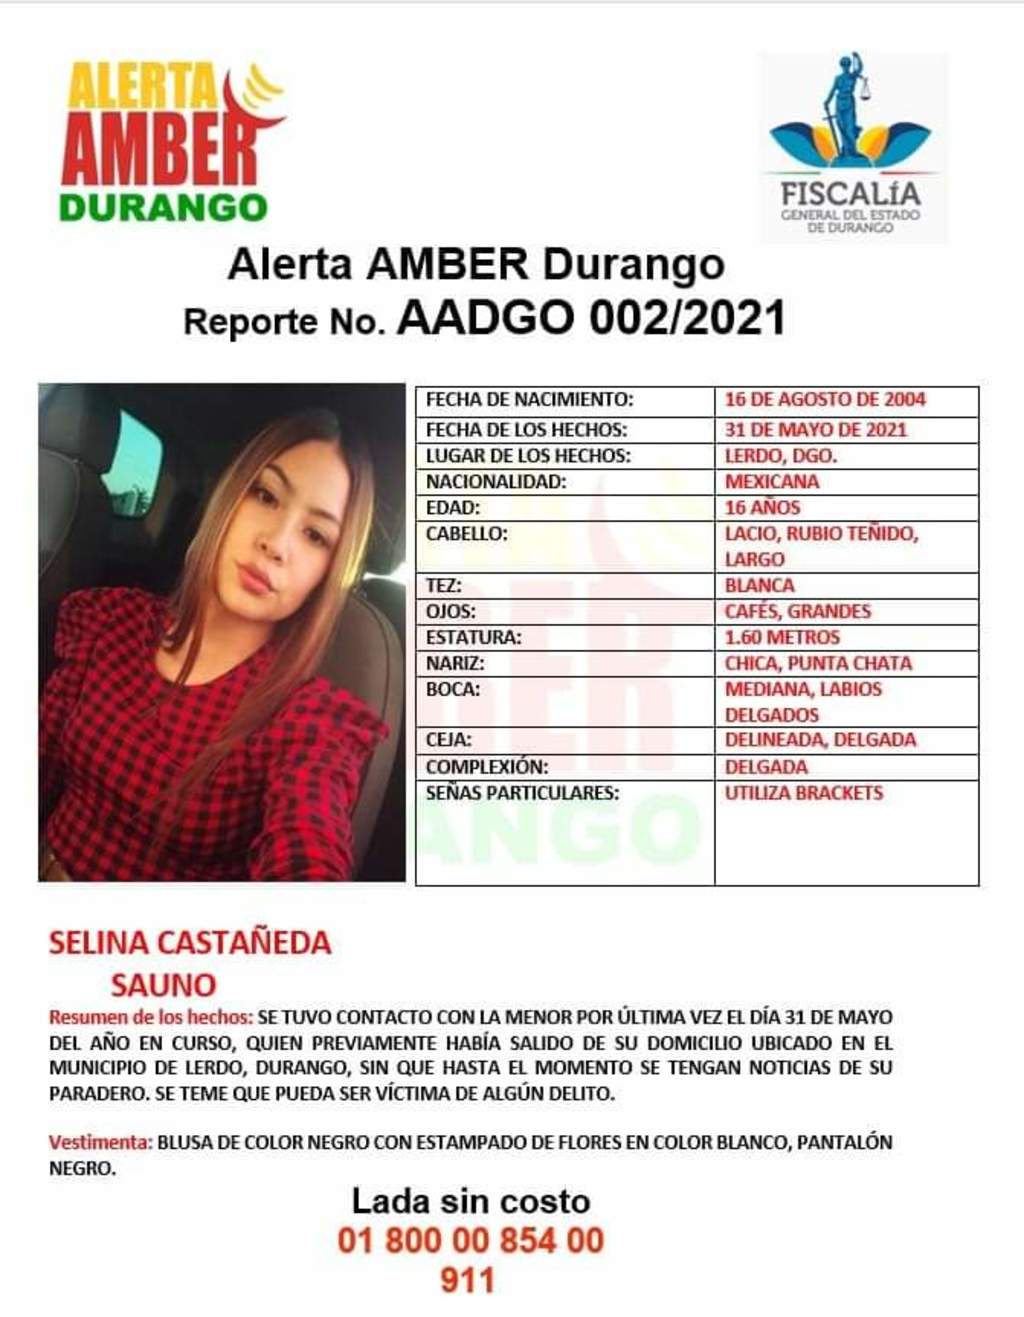 Solicitan ayuda para localizar a menor de edad desaparecida en Gómez Palacio